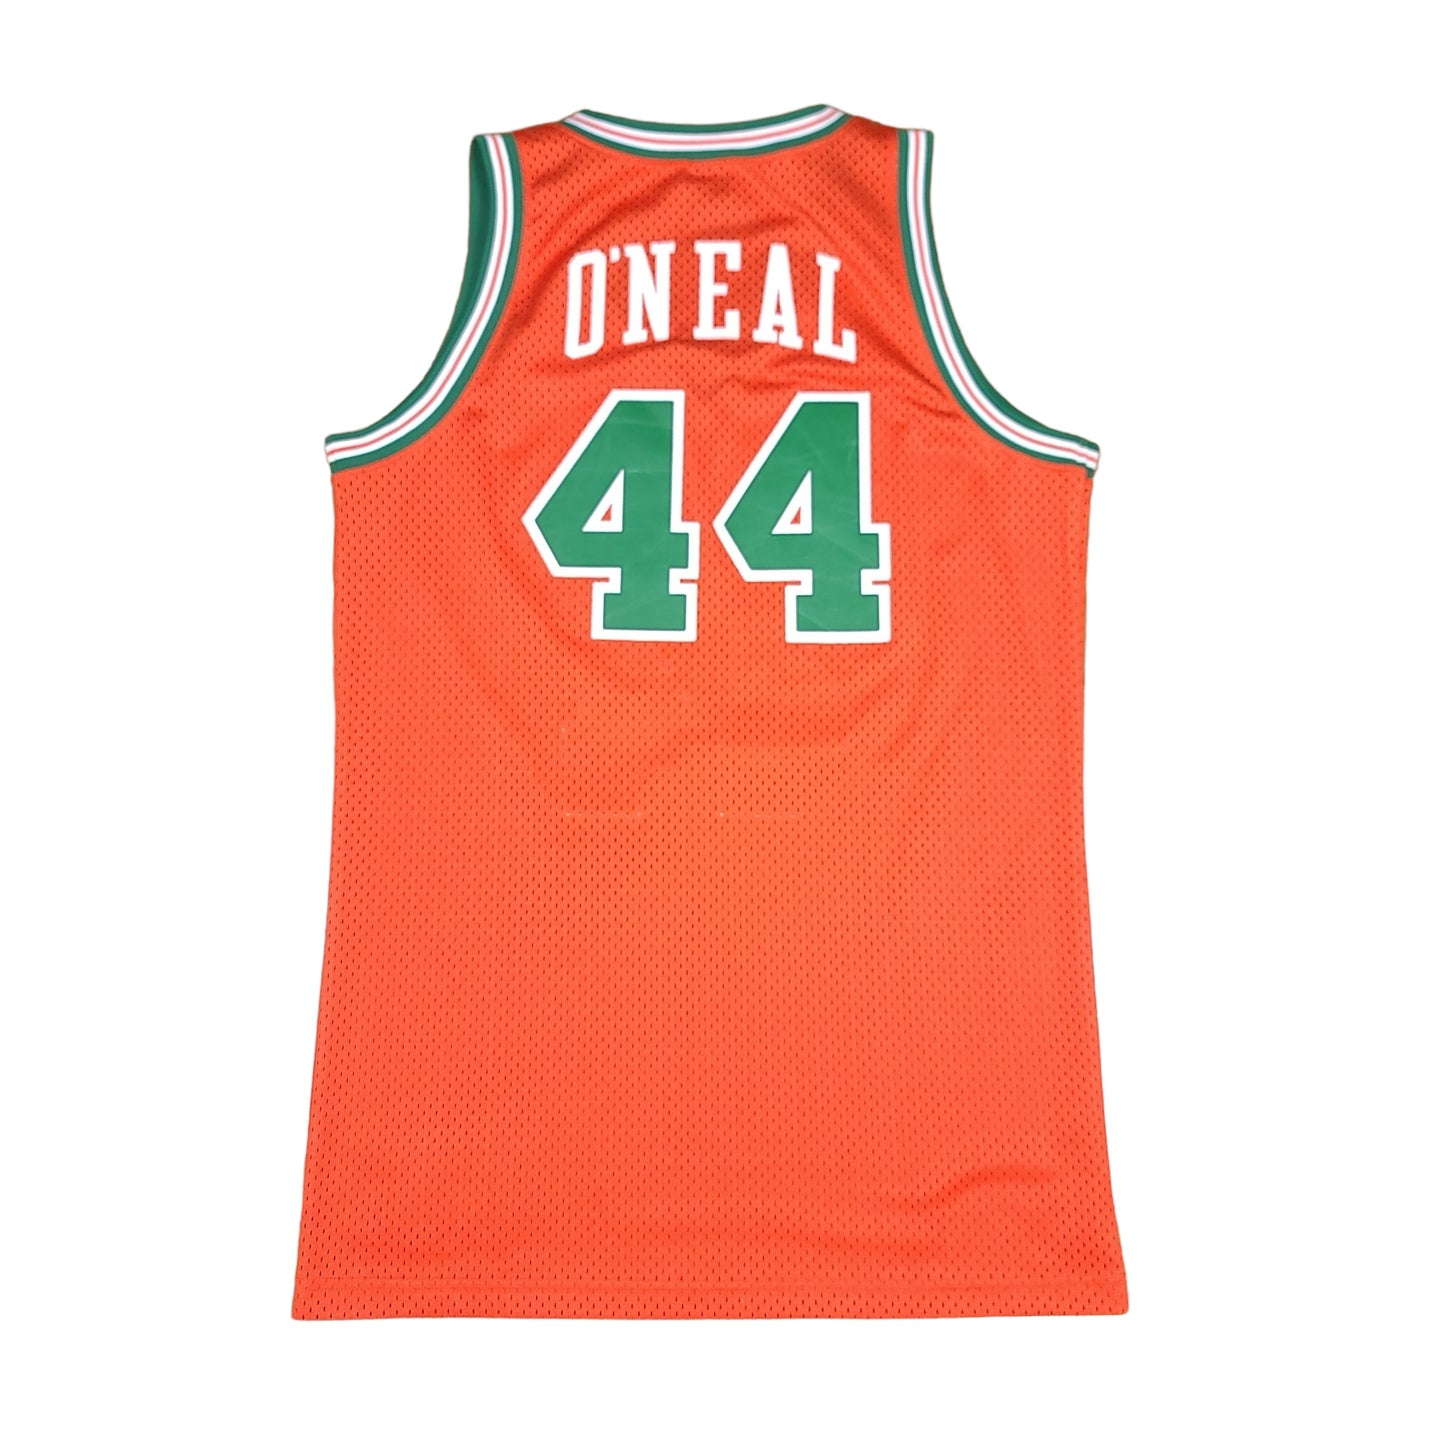 Jermaine O'neal EAU Claire Nike Orange Basketball Jersey